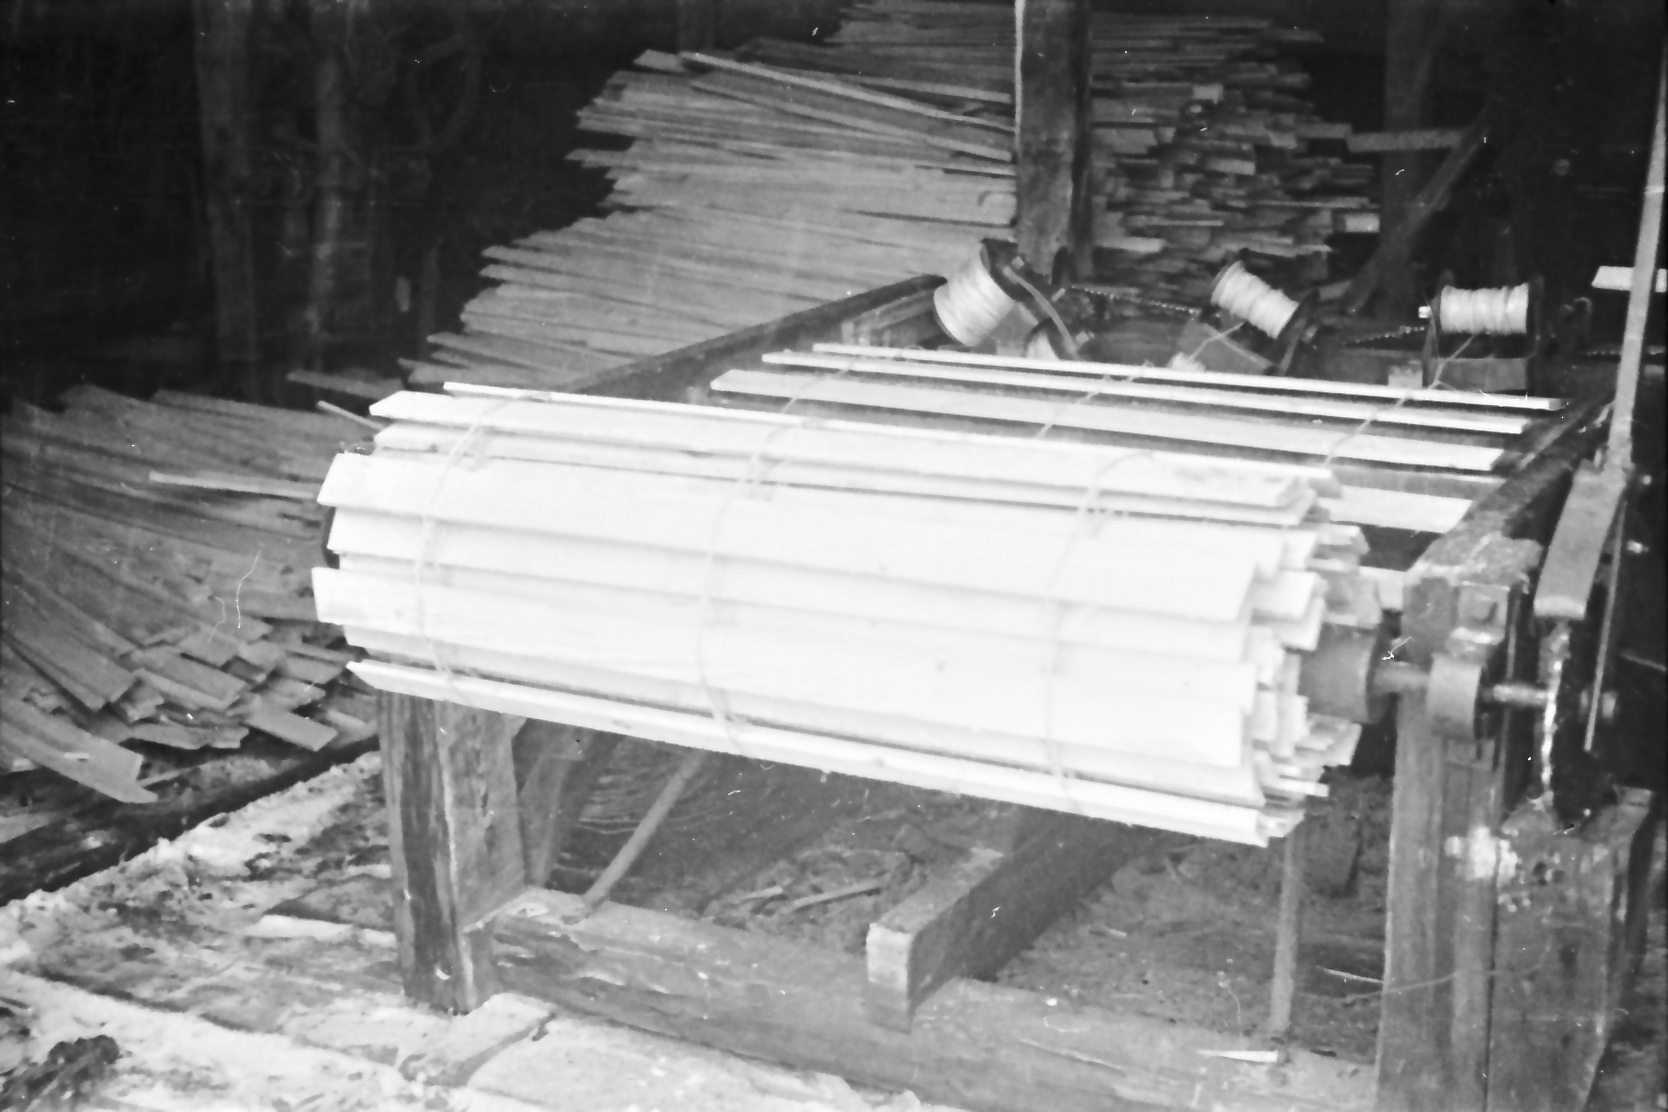 1950. aastate algul konstrueeris insener Arnold Volberg Paide tedemasinate tehases lumetõrje-aia ehk mehhaniseeritud lumeredelite valmistamise masina katseeksemplari. Selle pingi abil ühendati lauad kokku traadiga. Seade tegi võimalikuks 5–8 meetri pikkustes tükkides lumeredelite transpordi ja hoiustamise. Endise jooksva 100 meetri lumeredelite asemel mahtus veoautosse nii kokkupakitult 750 meetrit lumetõrje aeda. Kui ühe lumeredeli valmistamiseks kulus käsitsi arvestuslikult üle tunni aja, siis uue masinag